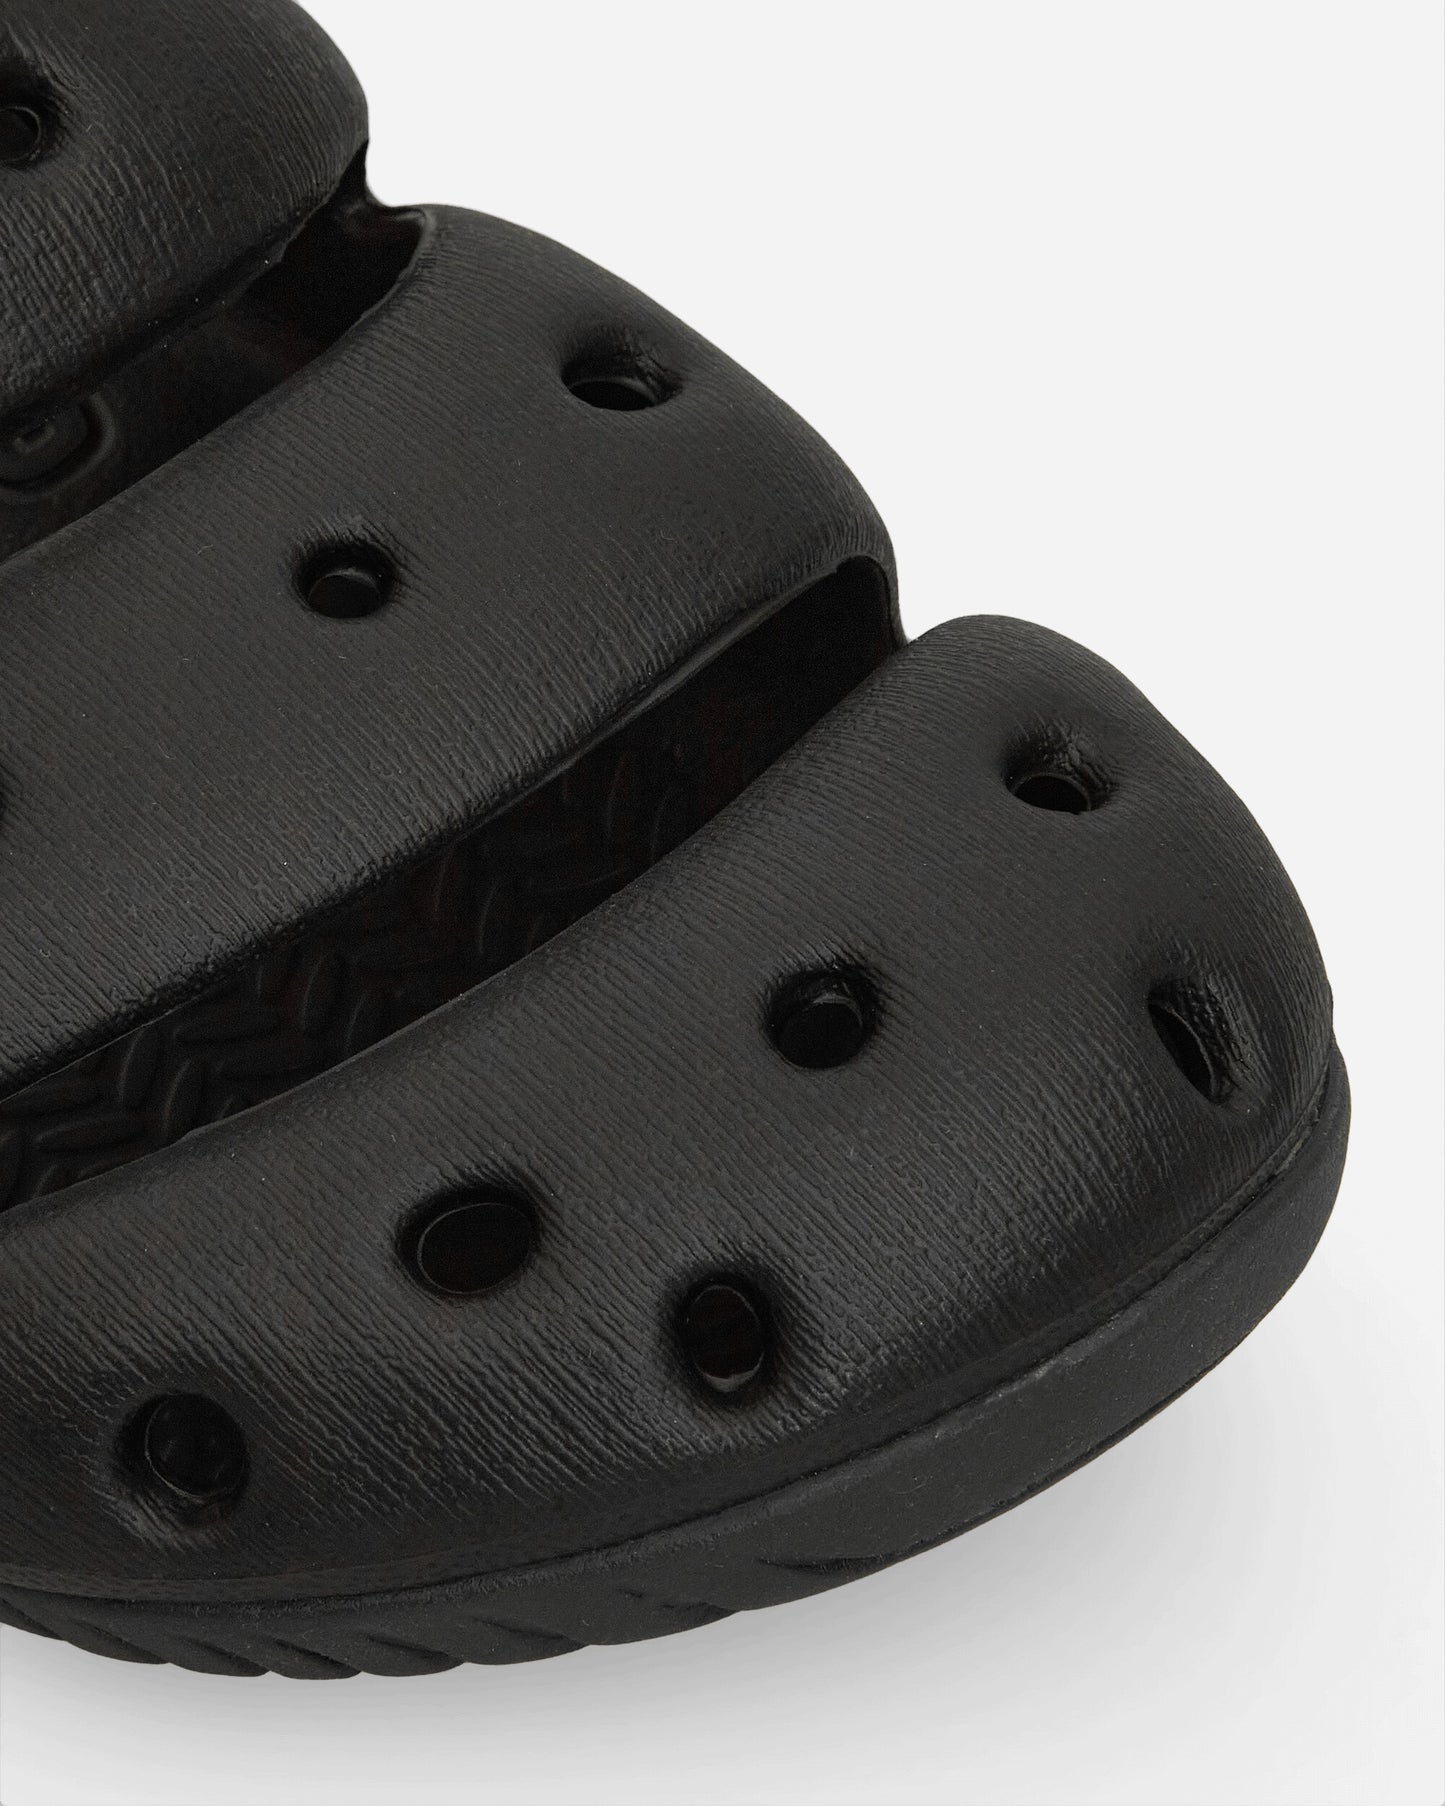 Keen Yogui Black/Magnet Sandals and Slides Slides 1028957 001